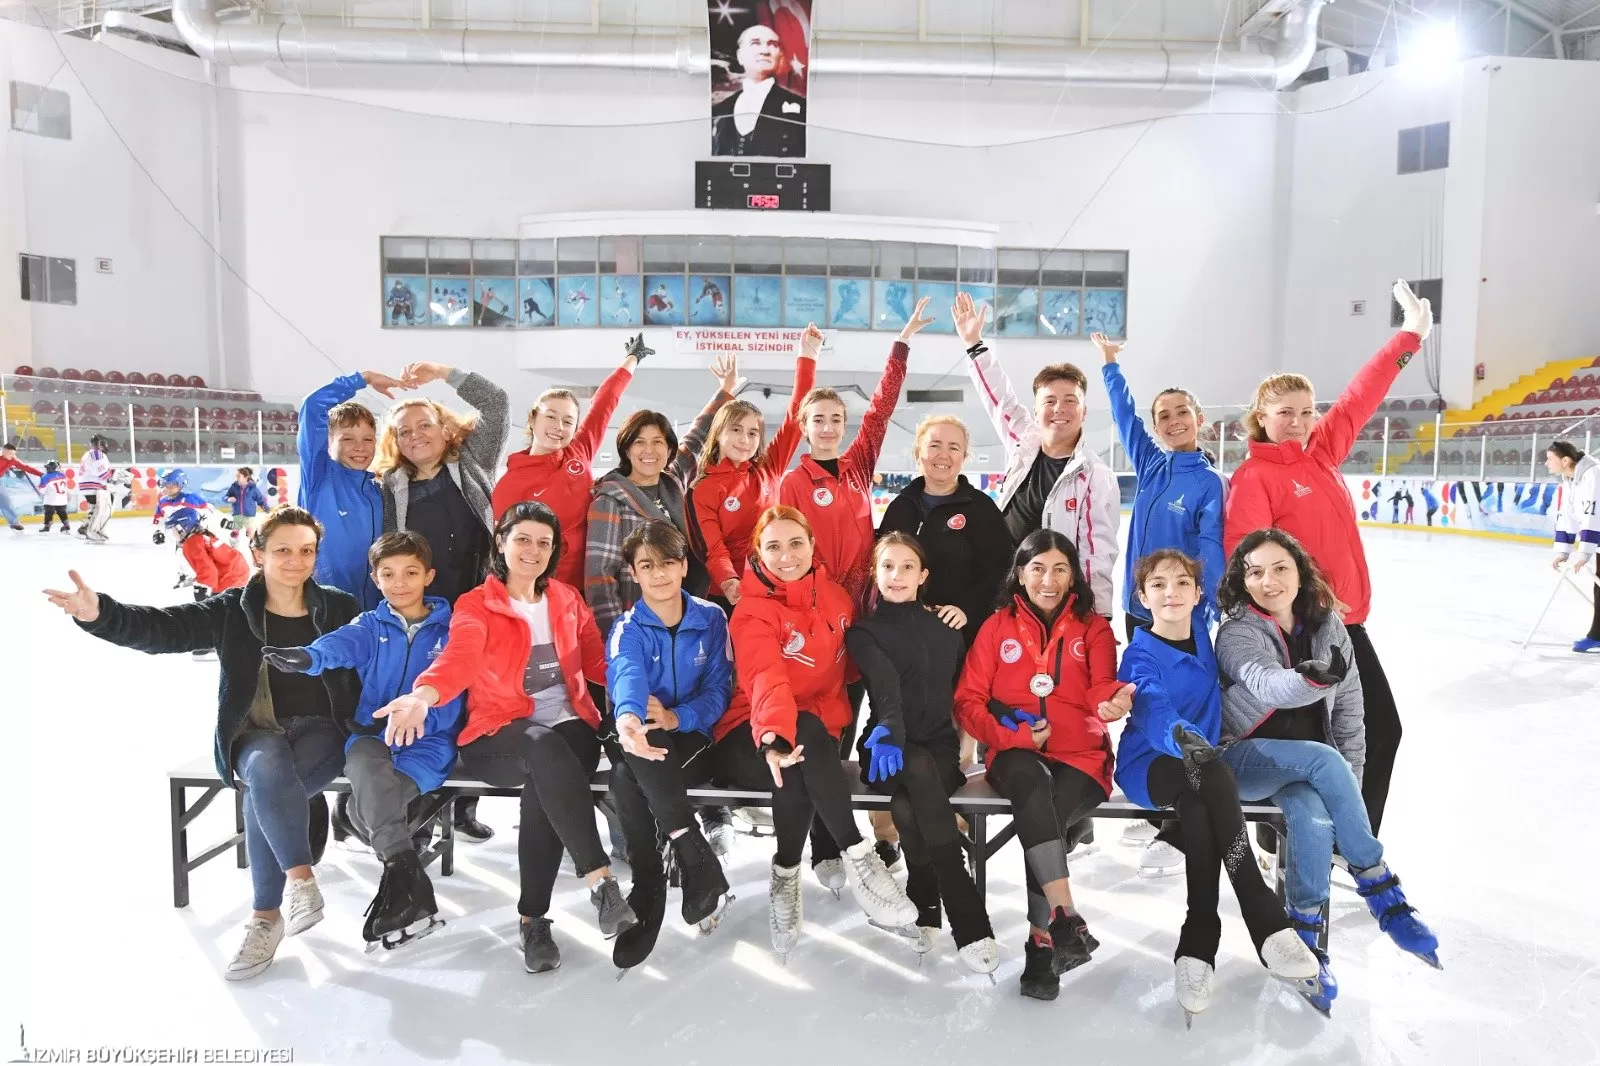 İzmir Büyükşehir Belediyesi, Anneler Günü'nü unutulmaz kılmak için Bornova Âşık Veysel Rekreasyon Alanı'ndaki Olimpik Buz Sporları Salonu'nu anne ve çocuklara açtı.